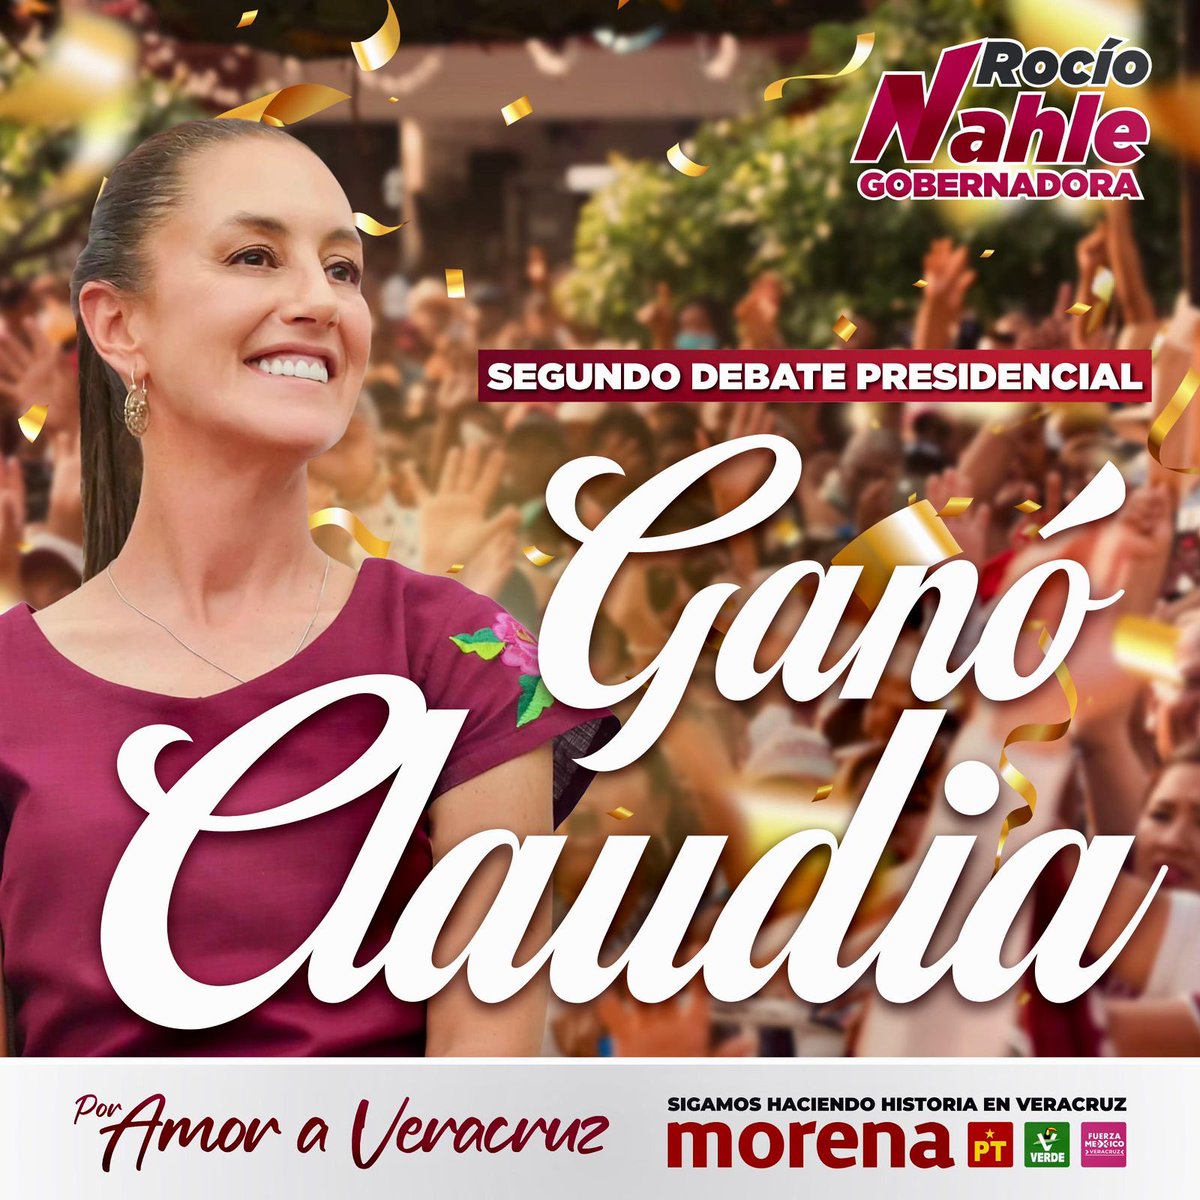 ¡¡Y por mucho!!! Nuestra querida y admirada ⁦@Claudiashein⁩ ya le ganó a la acomplejada del PRIAN. #ClaudiaPresidenta #ClaudiaGanó ¡Viva Morena!